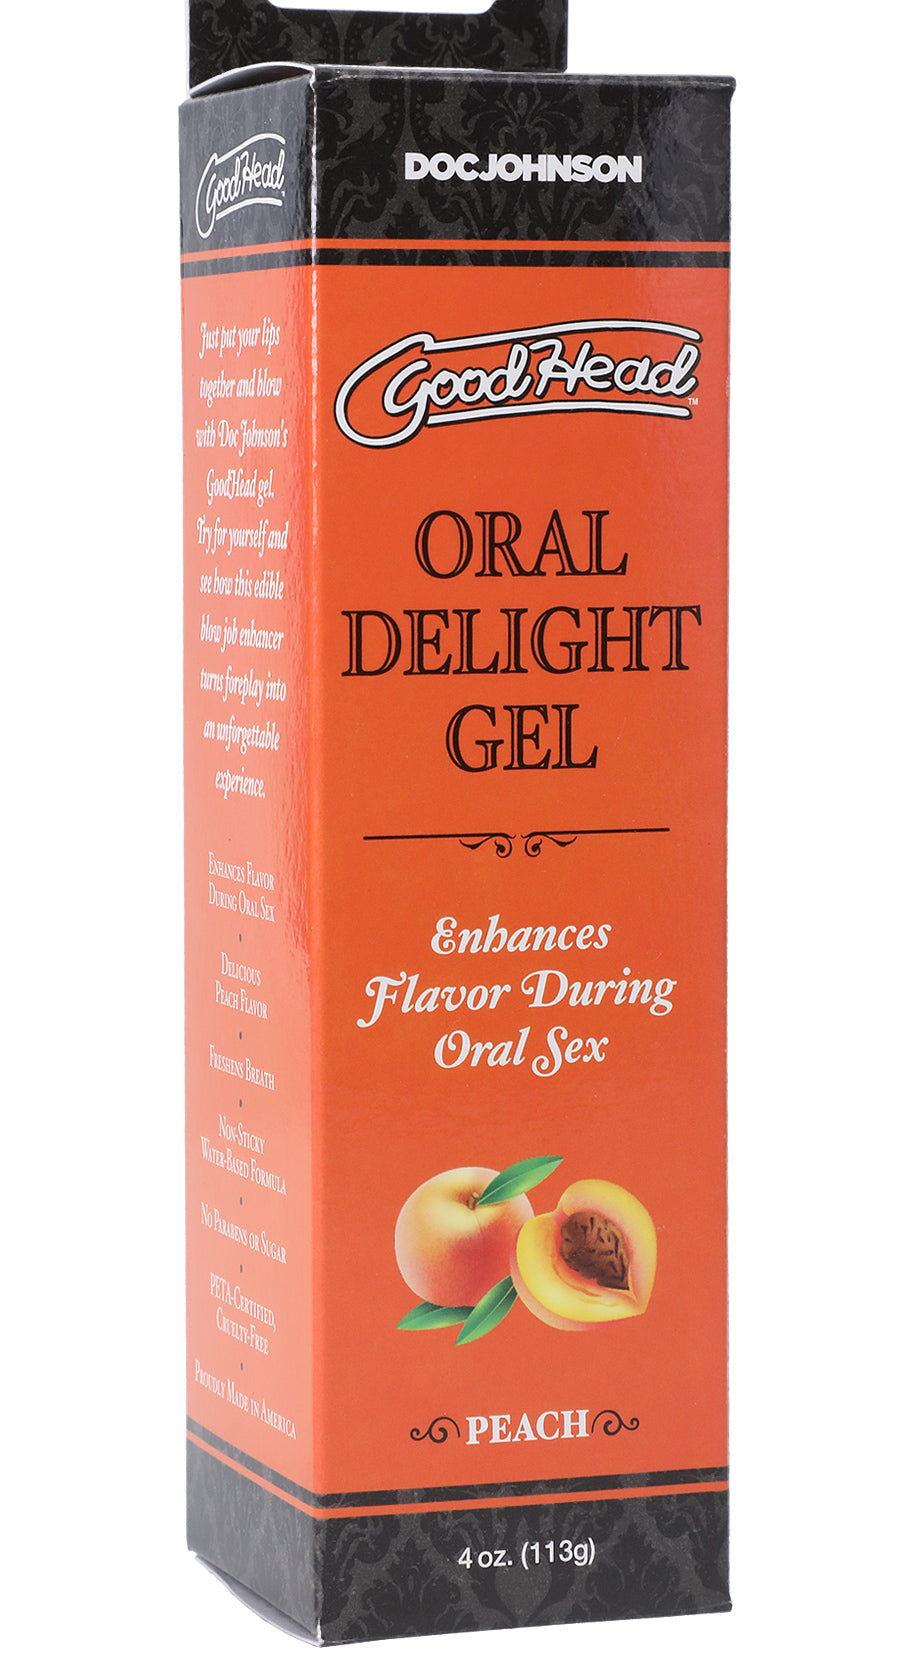 Goodhead - Oral Delight Gel - Peach - 4 Oz. DJ1361-09-BX